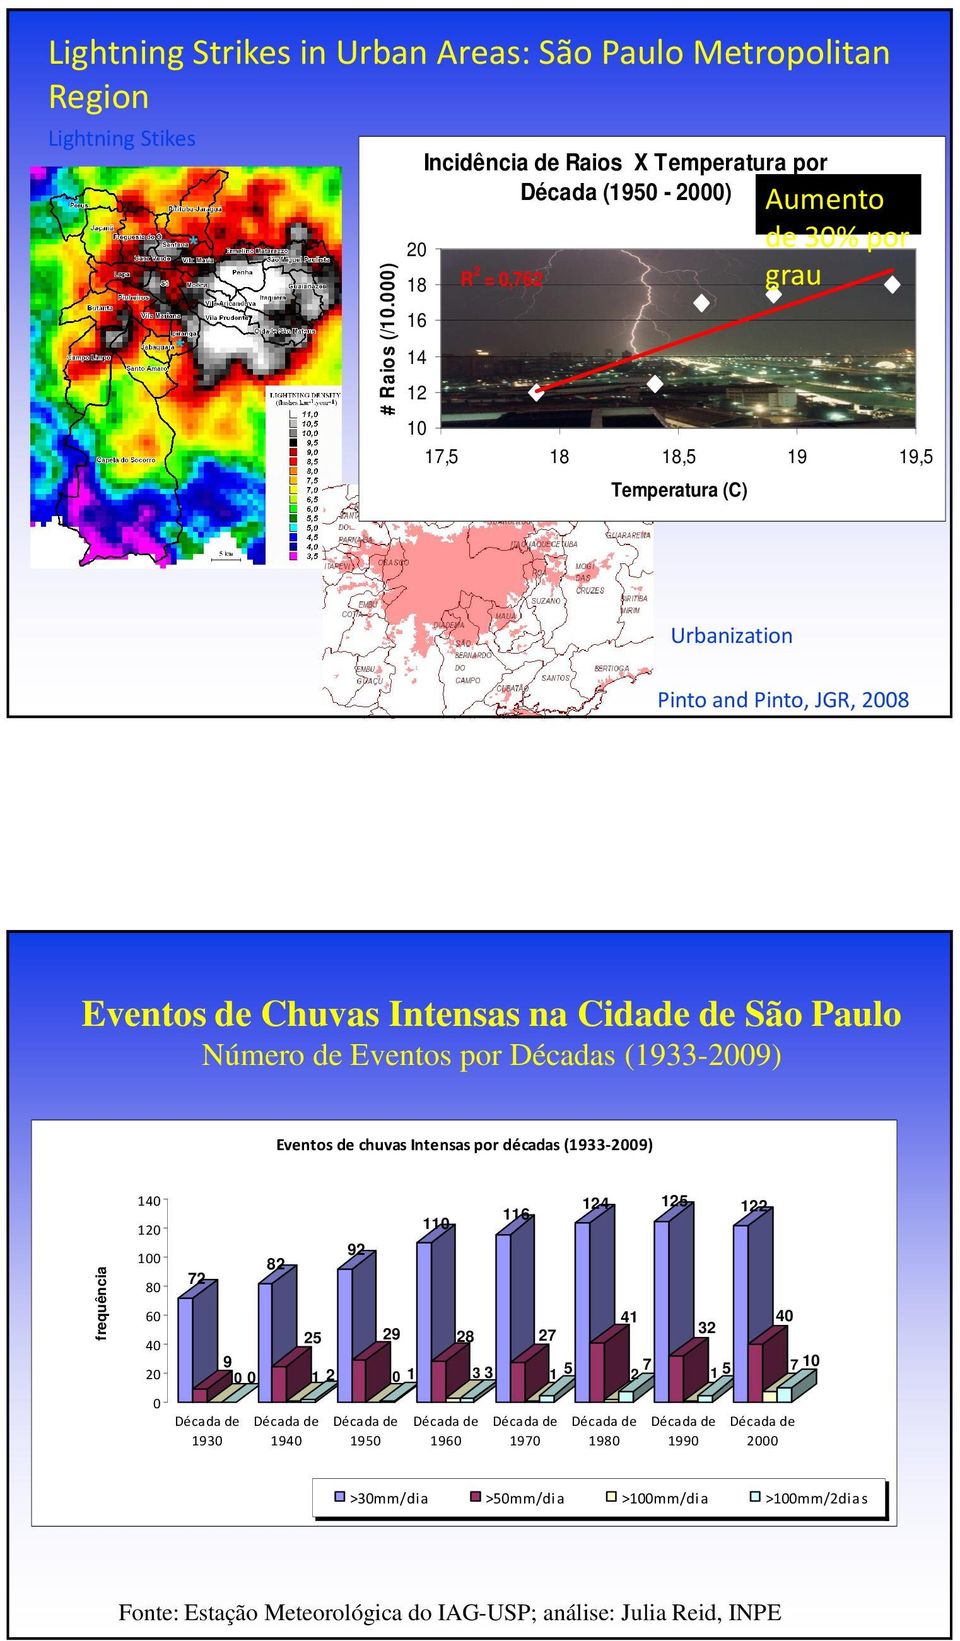 Eventos de Chuvas Intensas na Cidade de São Paulo Número de Eventos por Décadas (1933-2009) Eventos de chuvas Intensas por décadas (1933-2009) frequência 140 120 100 80 60 40 20 0 72 Década de